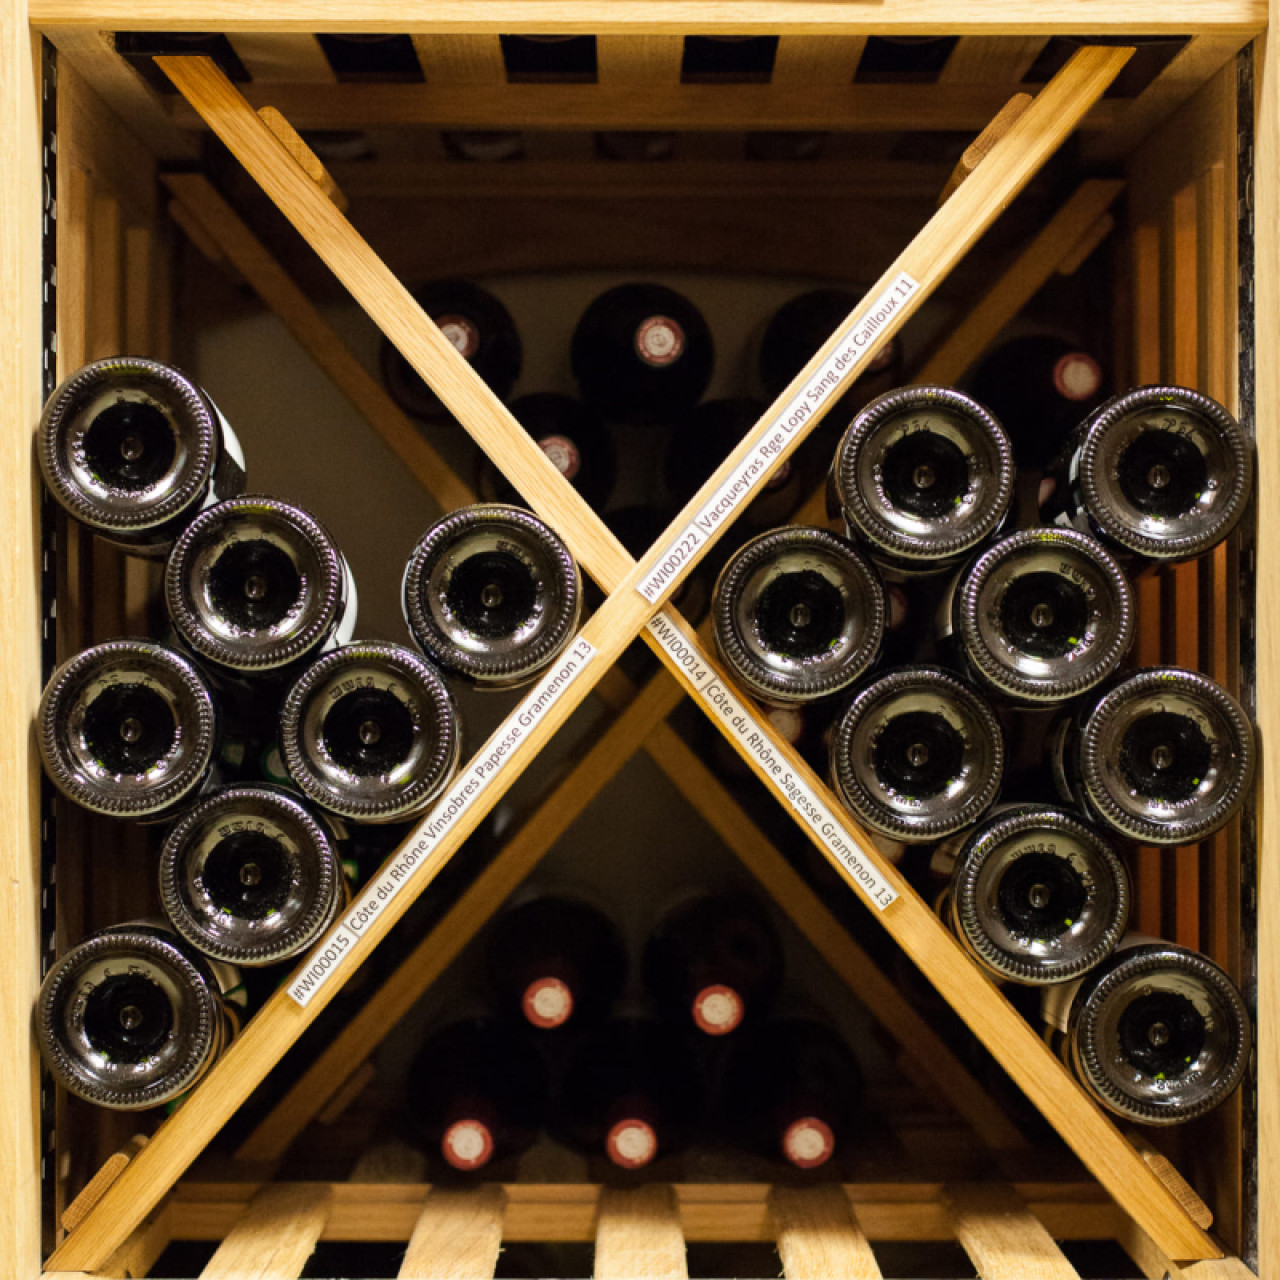 Module croix - Casier avec étagère fixe robuste en bois de chêne massif pour stocker une grande quantité de vins empilé en toute sécurité.